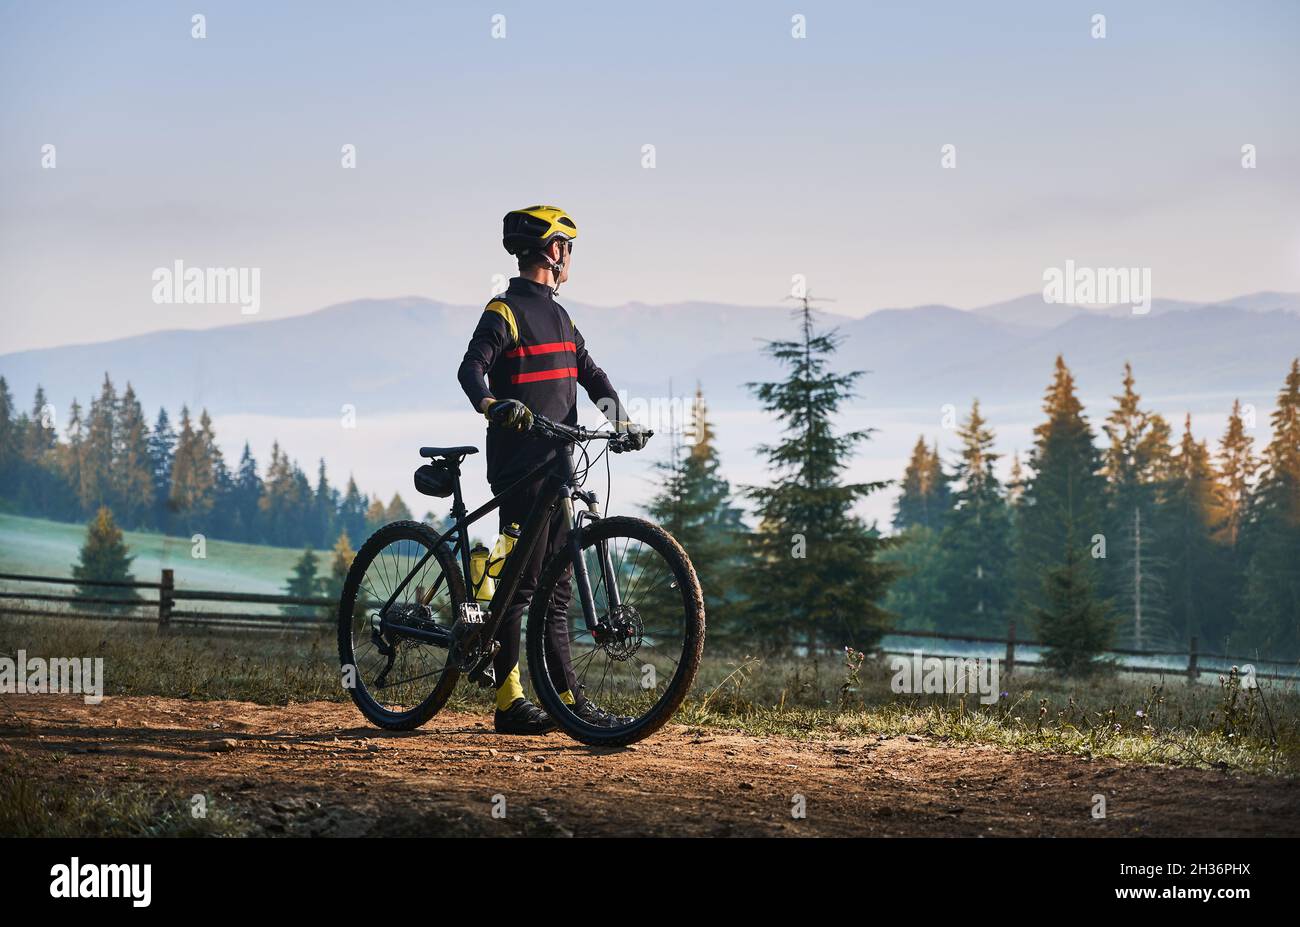 Cycliste masculin debout avec vélo avec des conifères et des collines sur  fond.Homme cycliste appréciant une balade à vélo dans les montagnes le  matin.Concept de sport, de vélo et de loisirs actifs